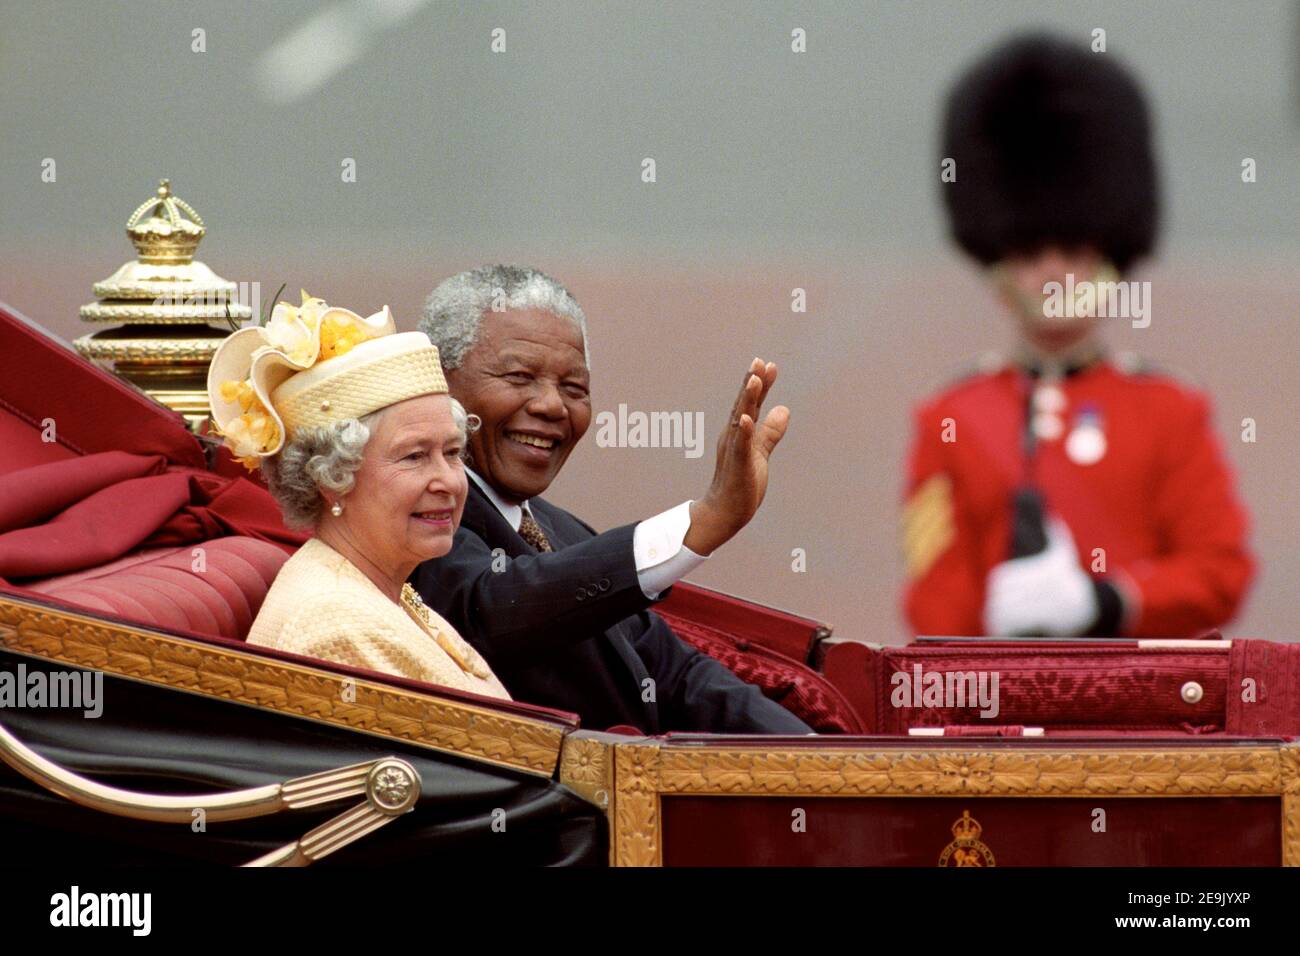 File foto datata 09/07/96 dell'allora presidente sudafricano Nelson Mandela e della regina Elisabetta II che cavalcano in carrozza lungo il Mall il primo giorno intero della sua visita di stato nel Regno Unito. La Regina regnerà come monarca per 69 anni il sabato. Foto Stock